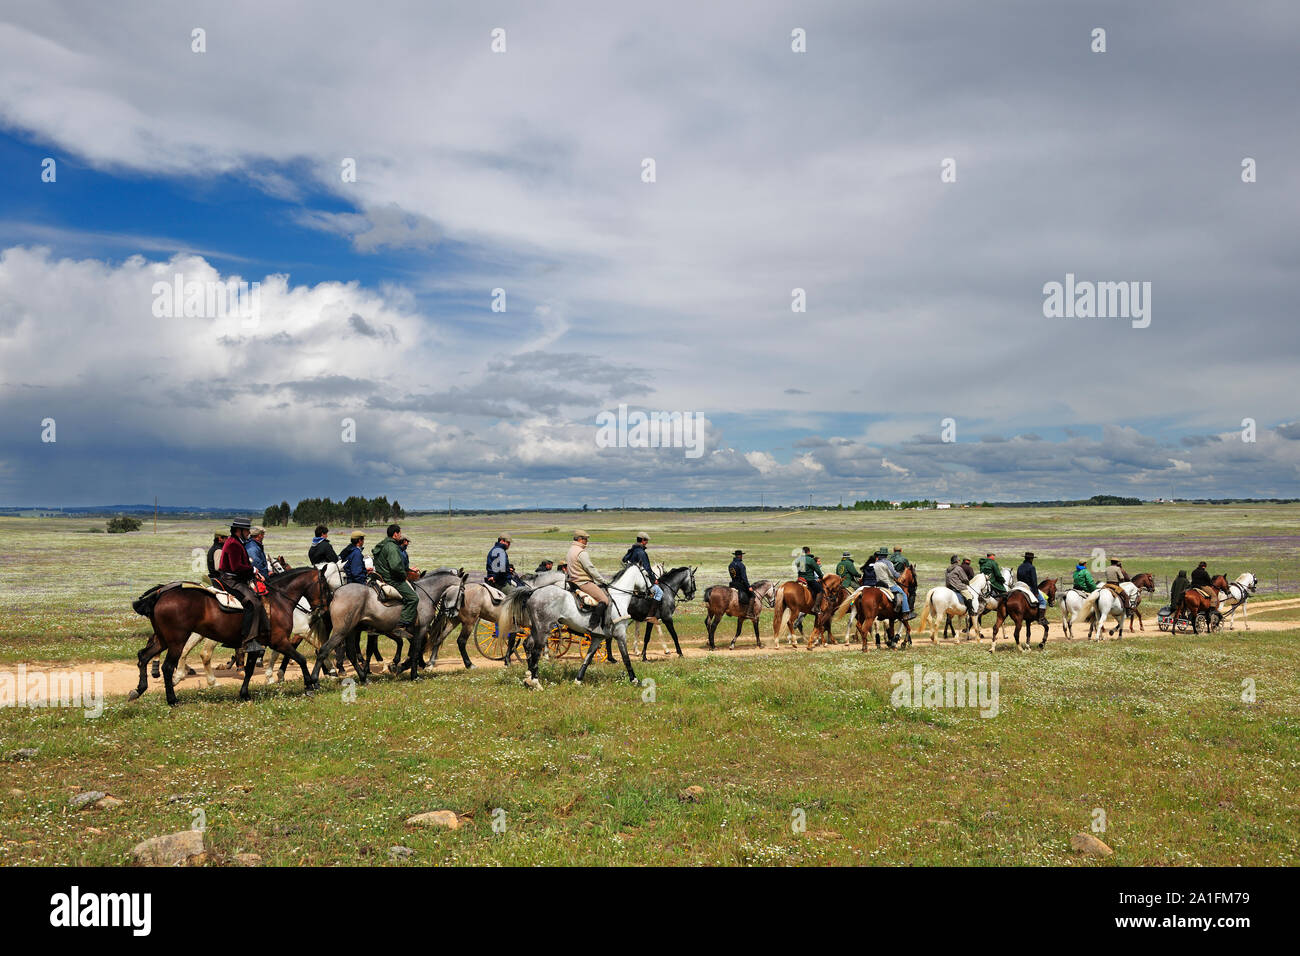 Ein Pferd Wallfahrt im Alentejo. Pferd Menschen praktizieren horsemanship als Ausdruck von Tradition, Kultur und Glauben durch die Wallfahrt auf dem Pferd. V Stockfoto